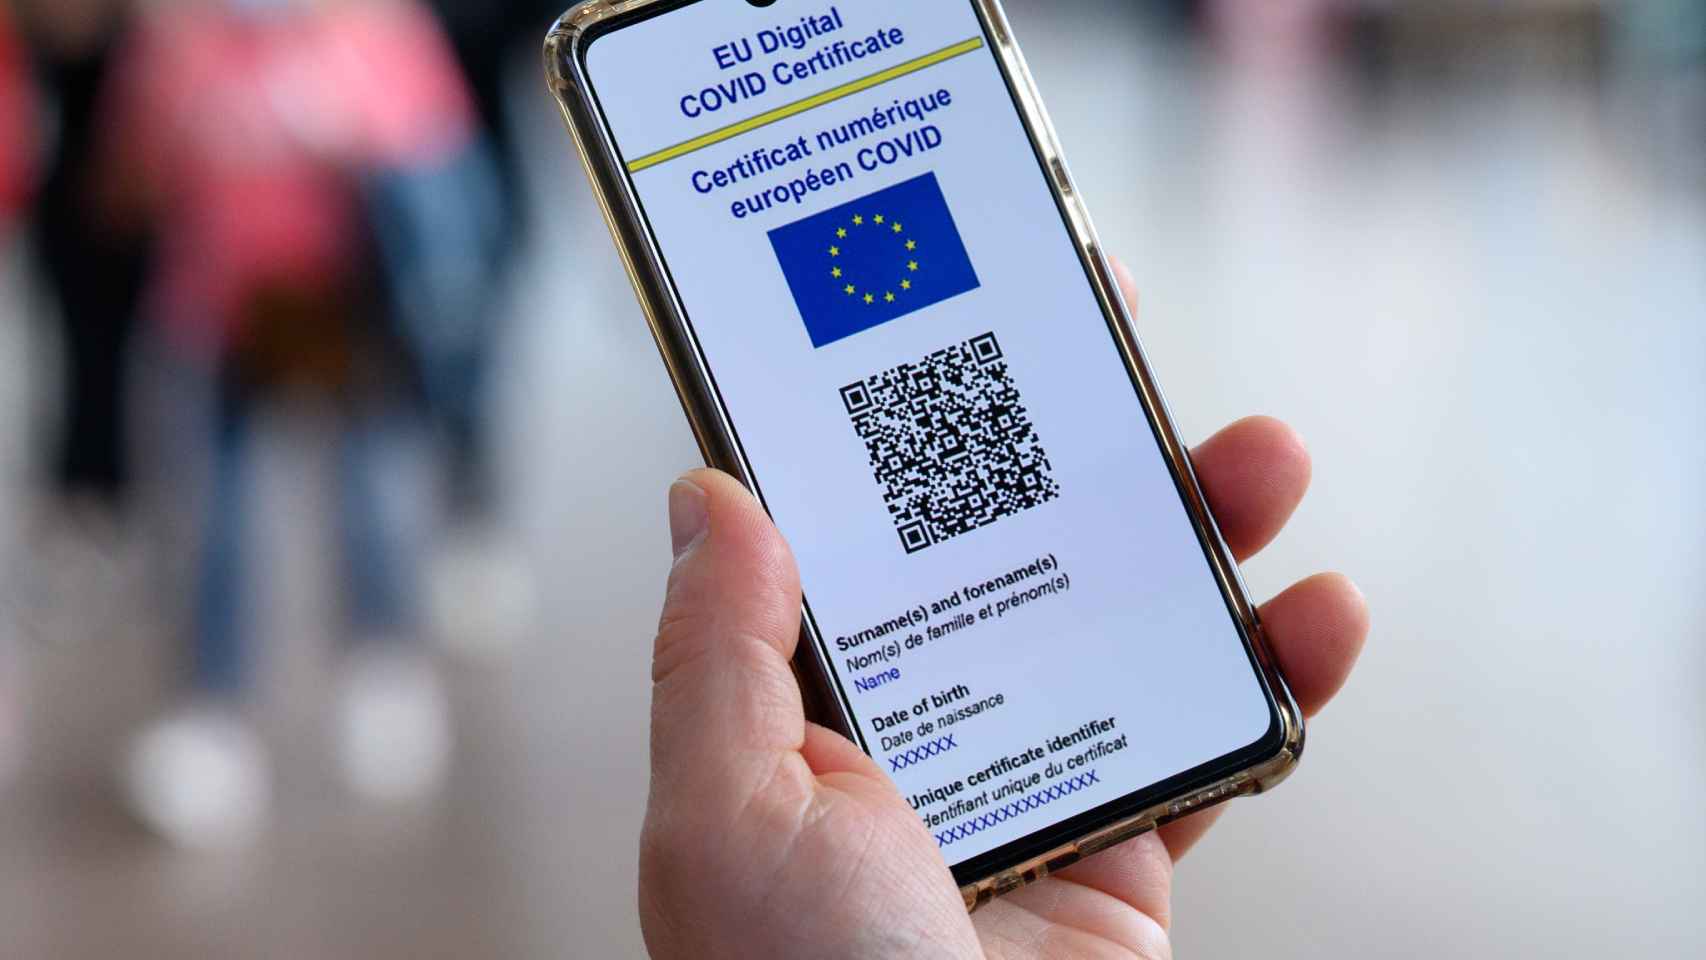 Certificado Covid de la Unión Europea